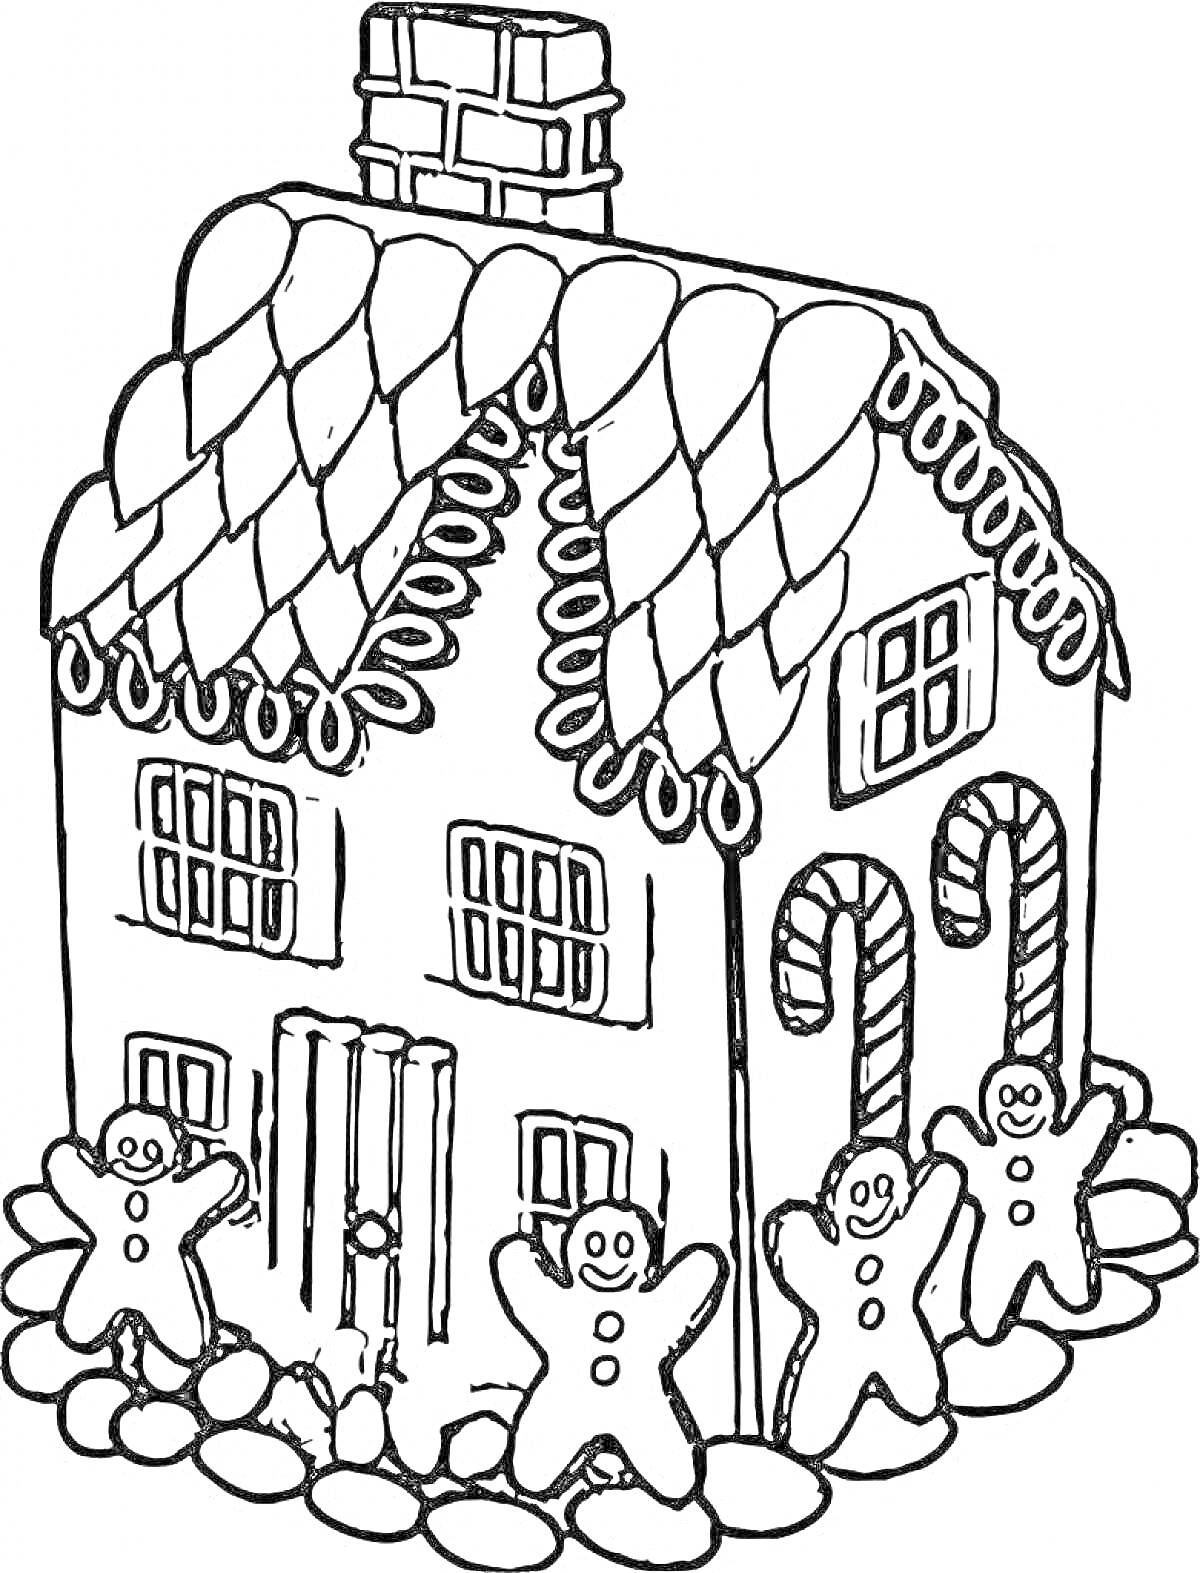 Раскраска Пряничный домик с карамельной крышей, леденцами в форме трости, и пряничными человечками